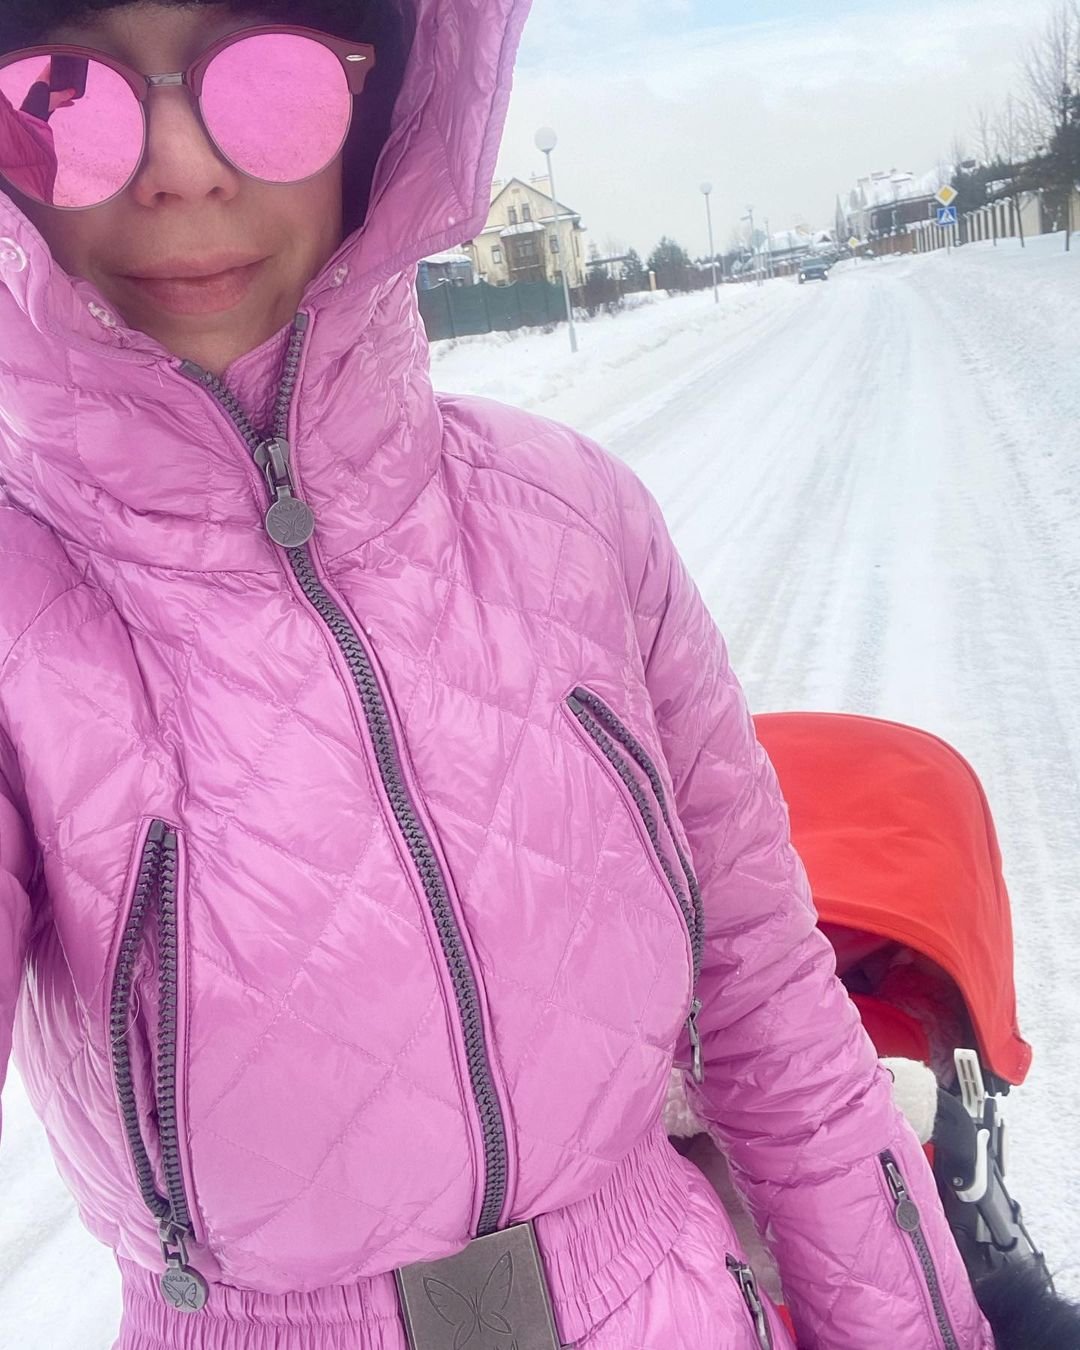 Наталья Подольская намерена вернуться к работе, несмотря на совсем маленького ребёнка